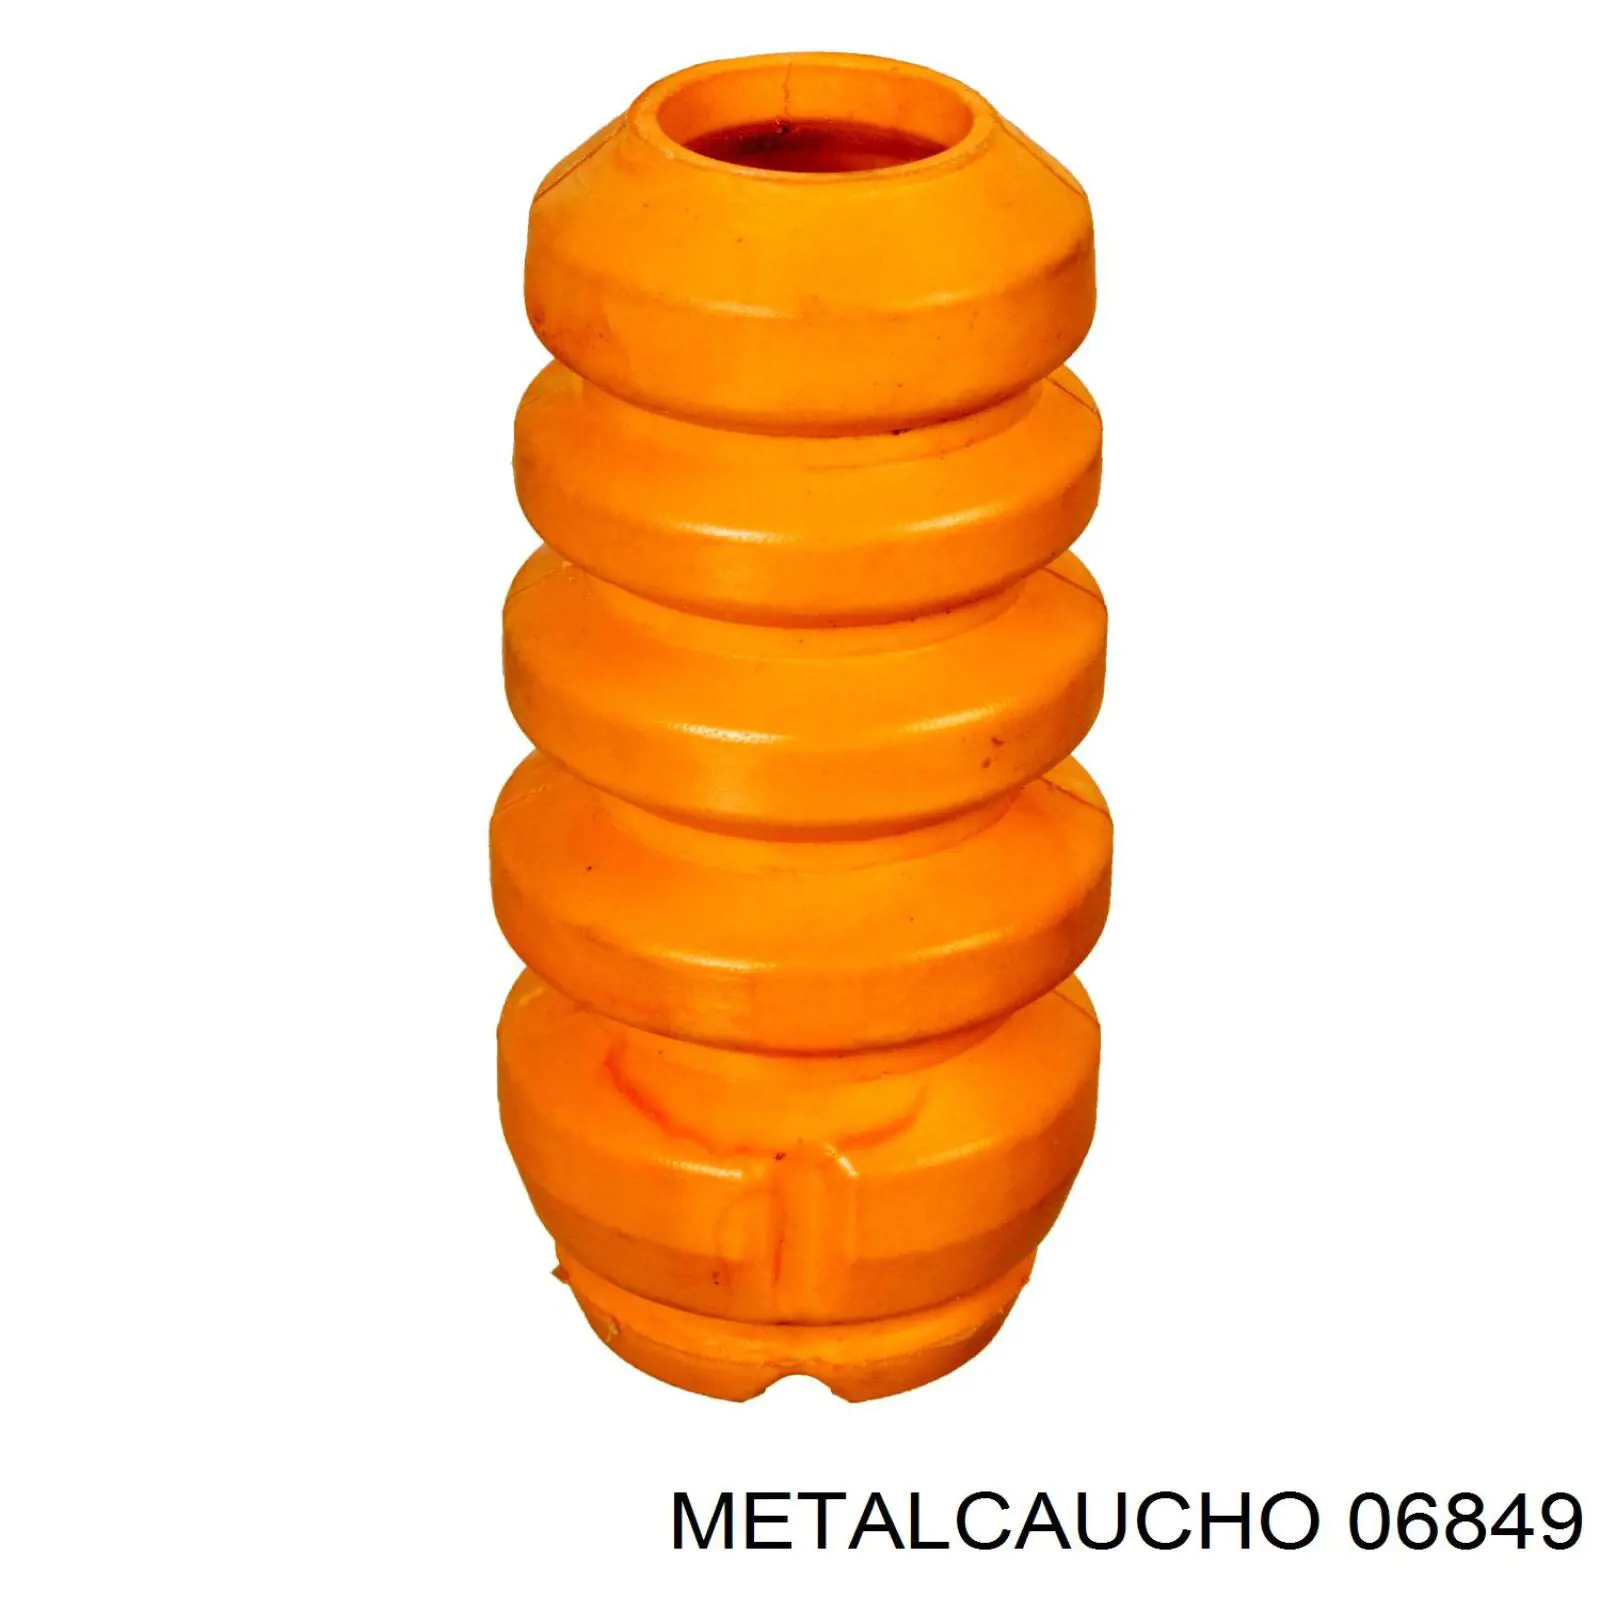 06849 Metalcaucho pára-choque (grade de proteção de amortecedor dianteiro + bota de proteção)